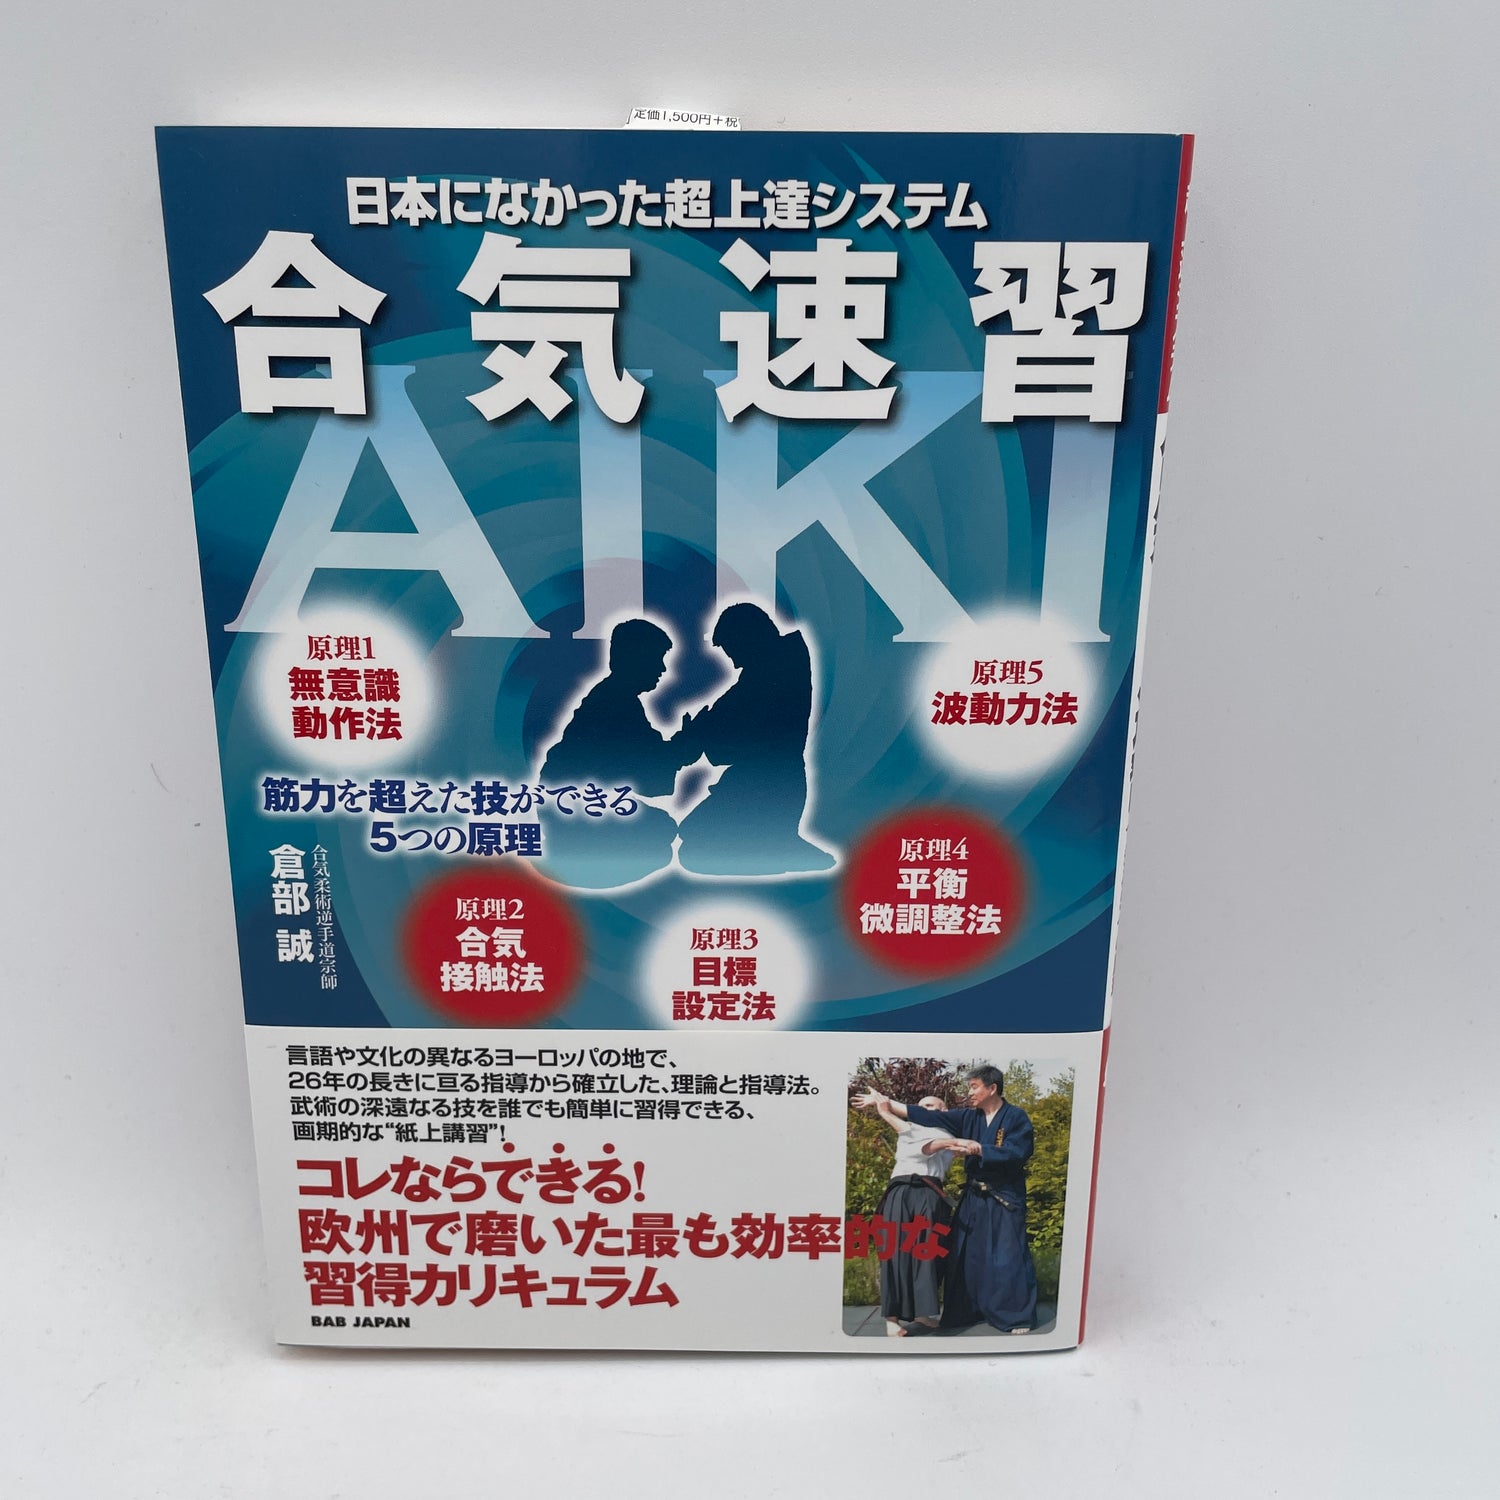 Libro de aprendizaje rápido de Aiki de Makoto Kurobe